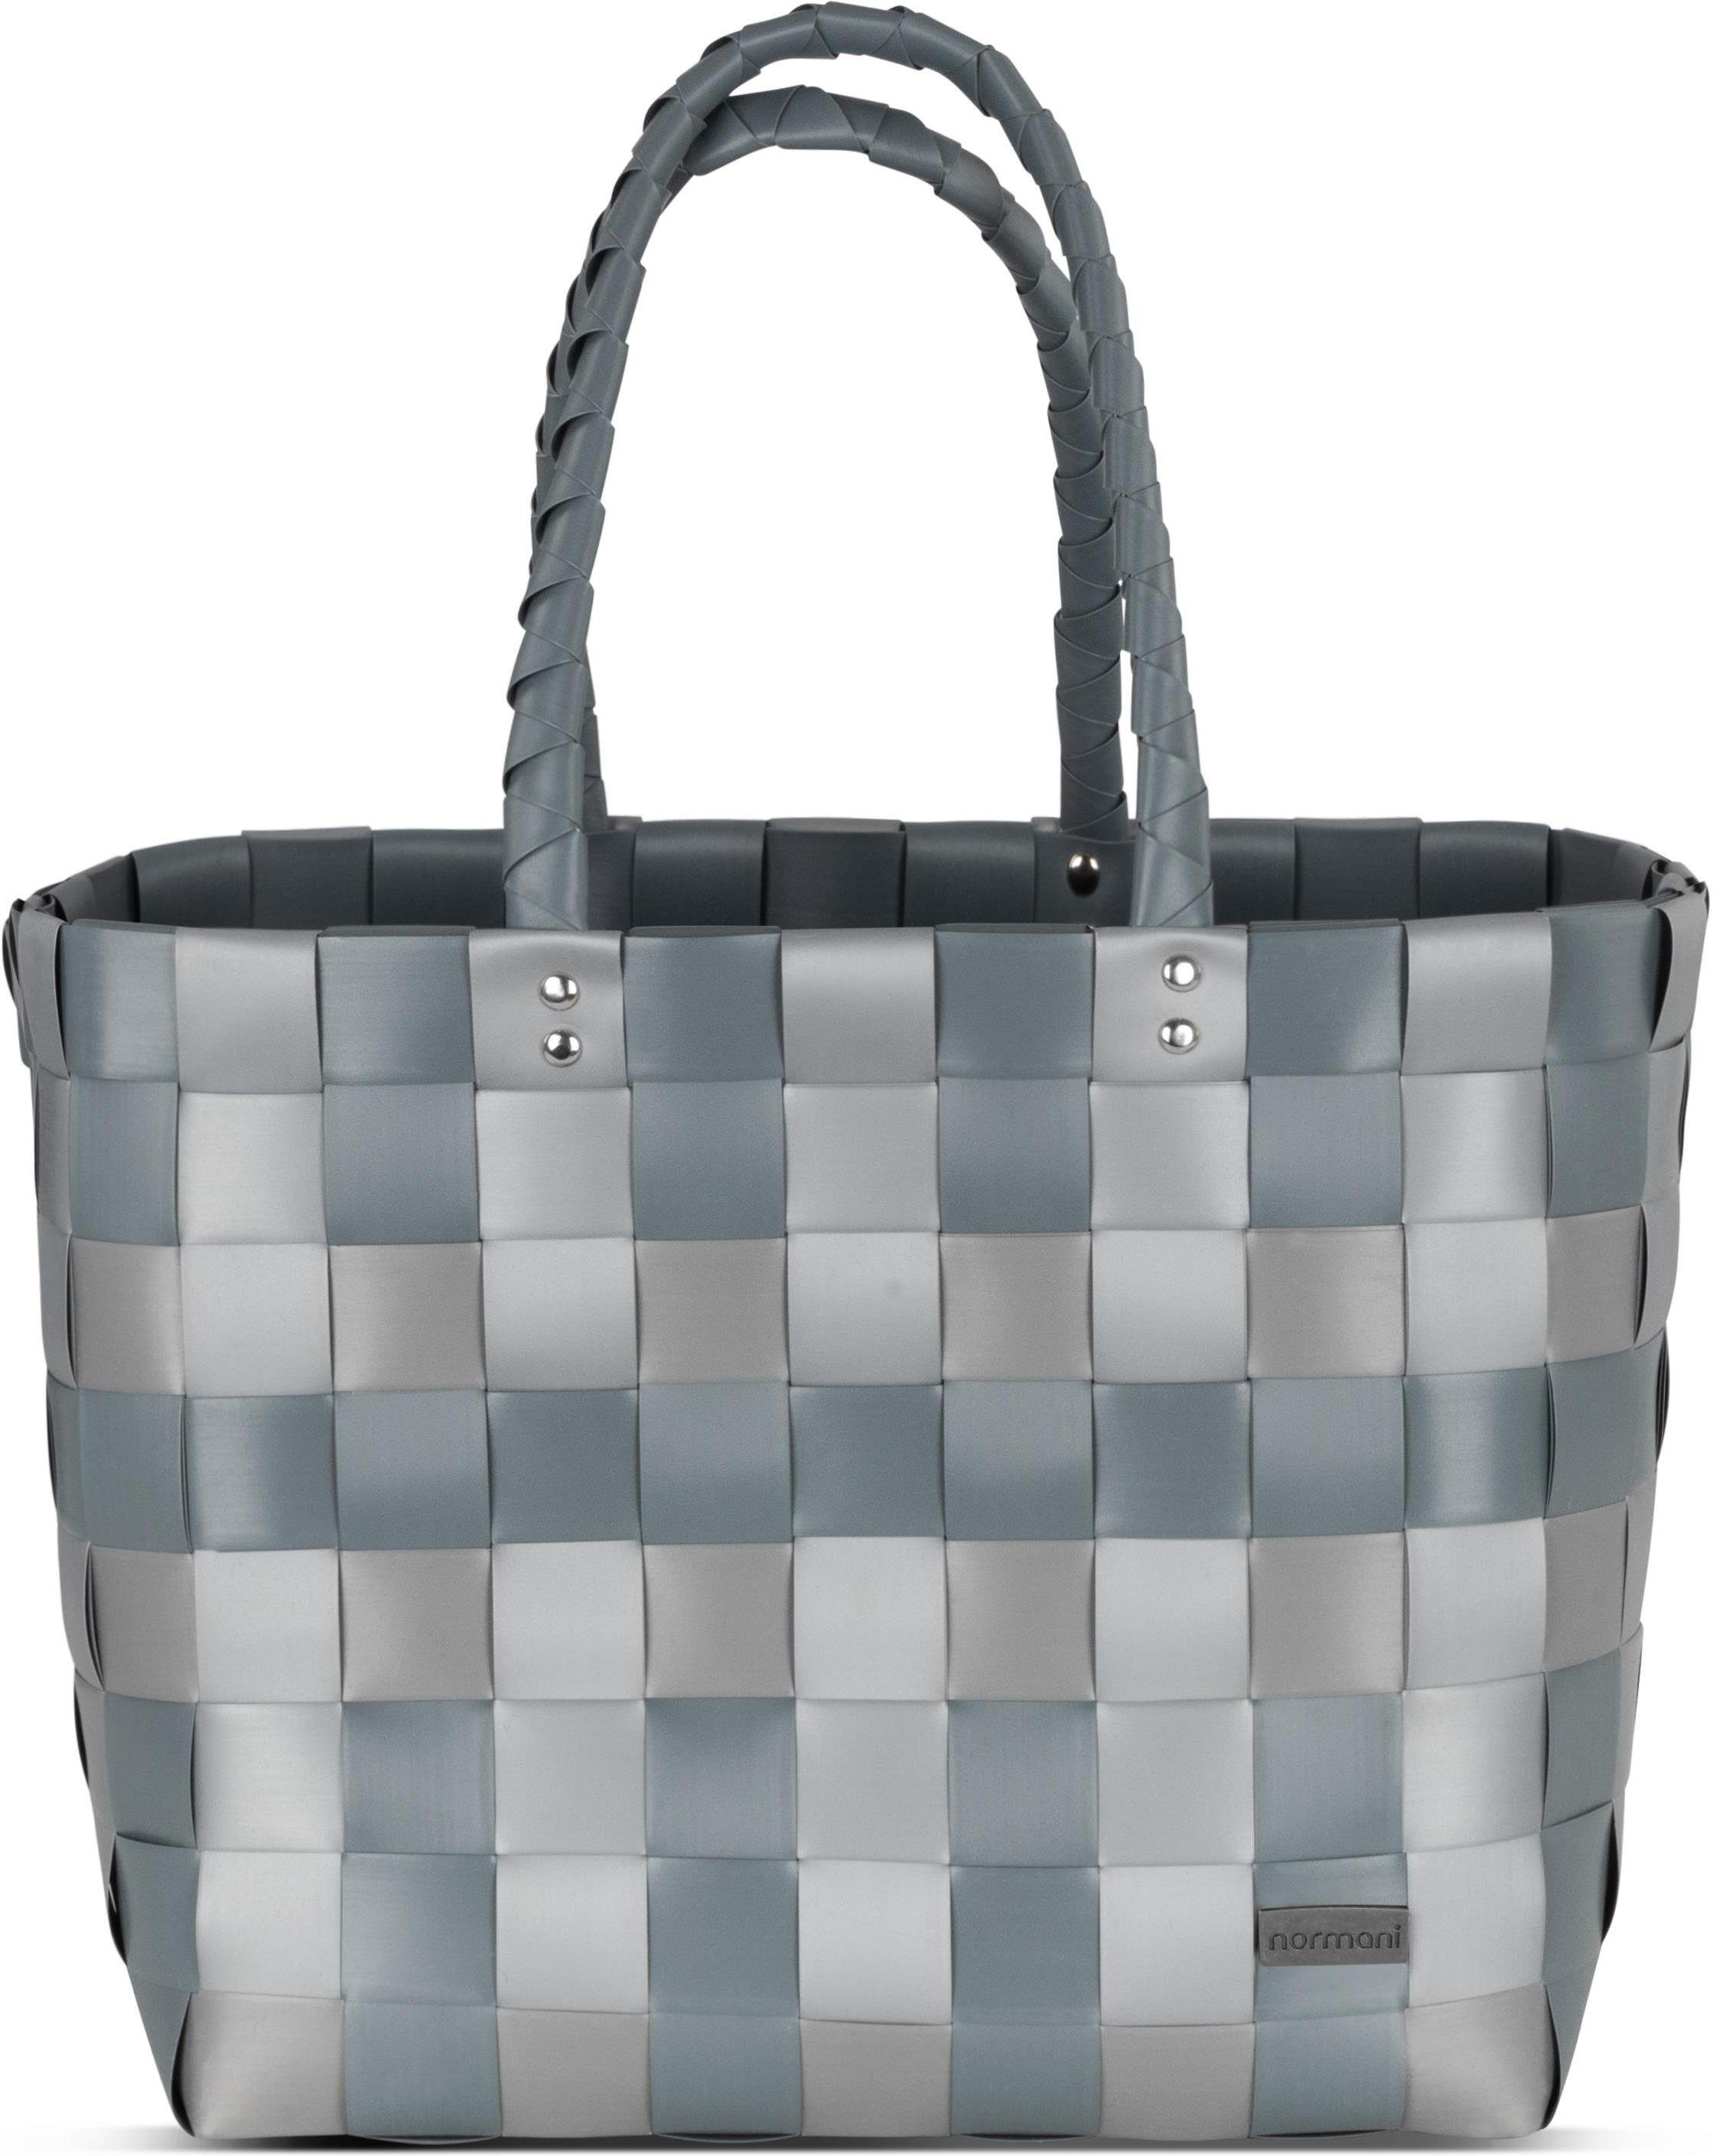 normani Einkaufskorb Einkaufskorb Einkaufstasche aus Kunststoff, 20 l, Flechtkorb aus pflegeleichtem Material Grey Shadow